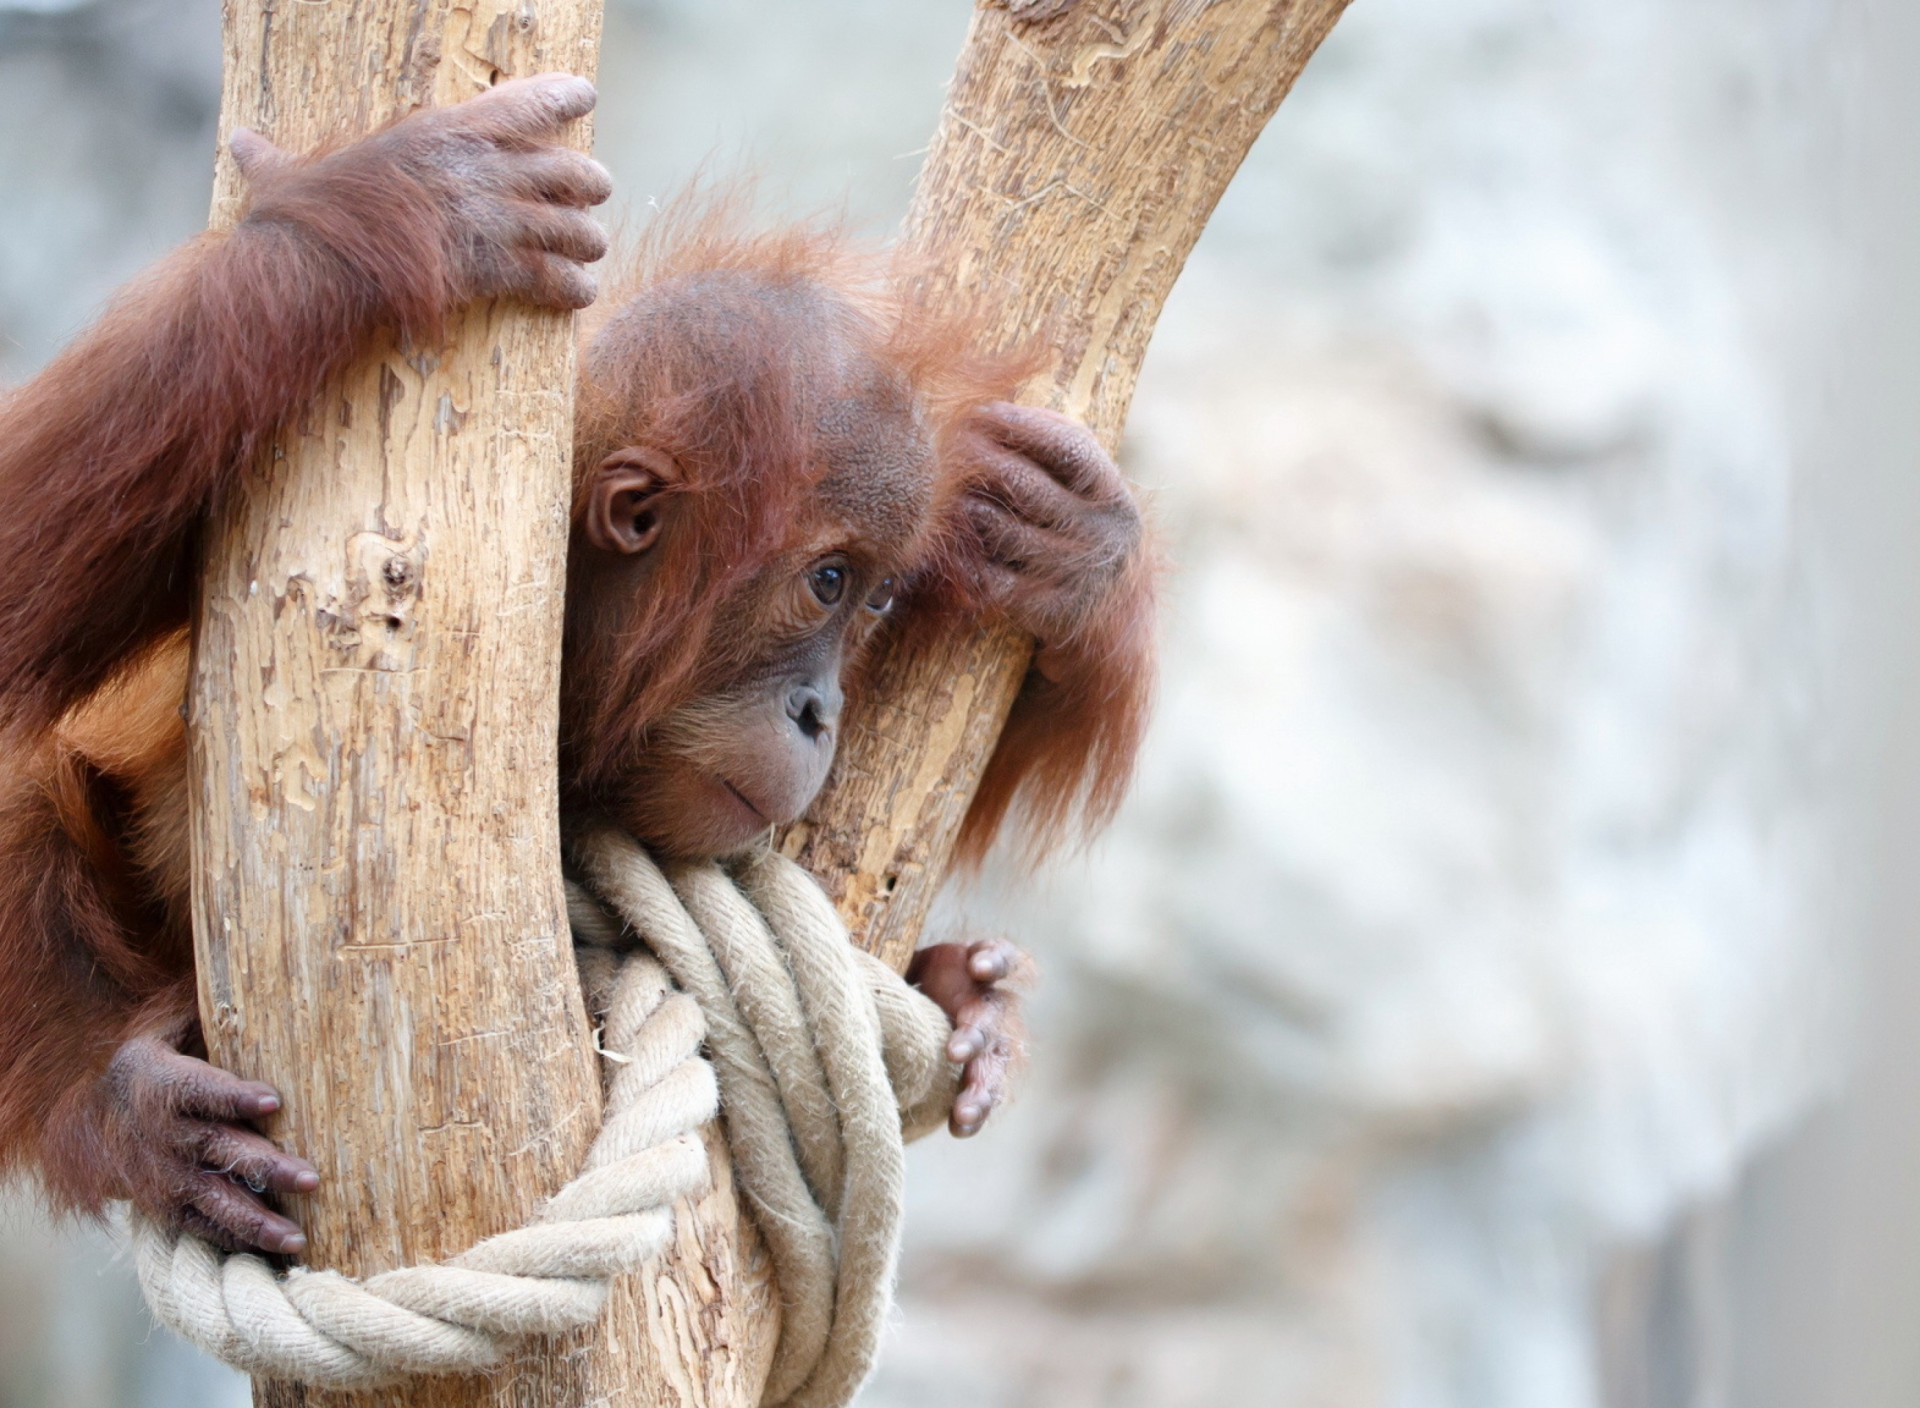 Обои Cute Little Monkey In Zoo 1920x1408